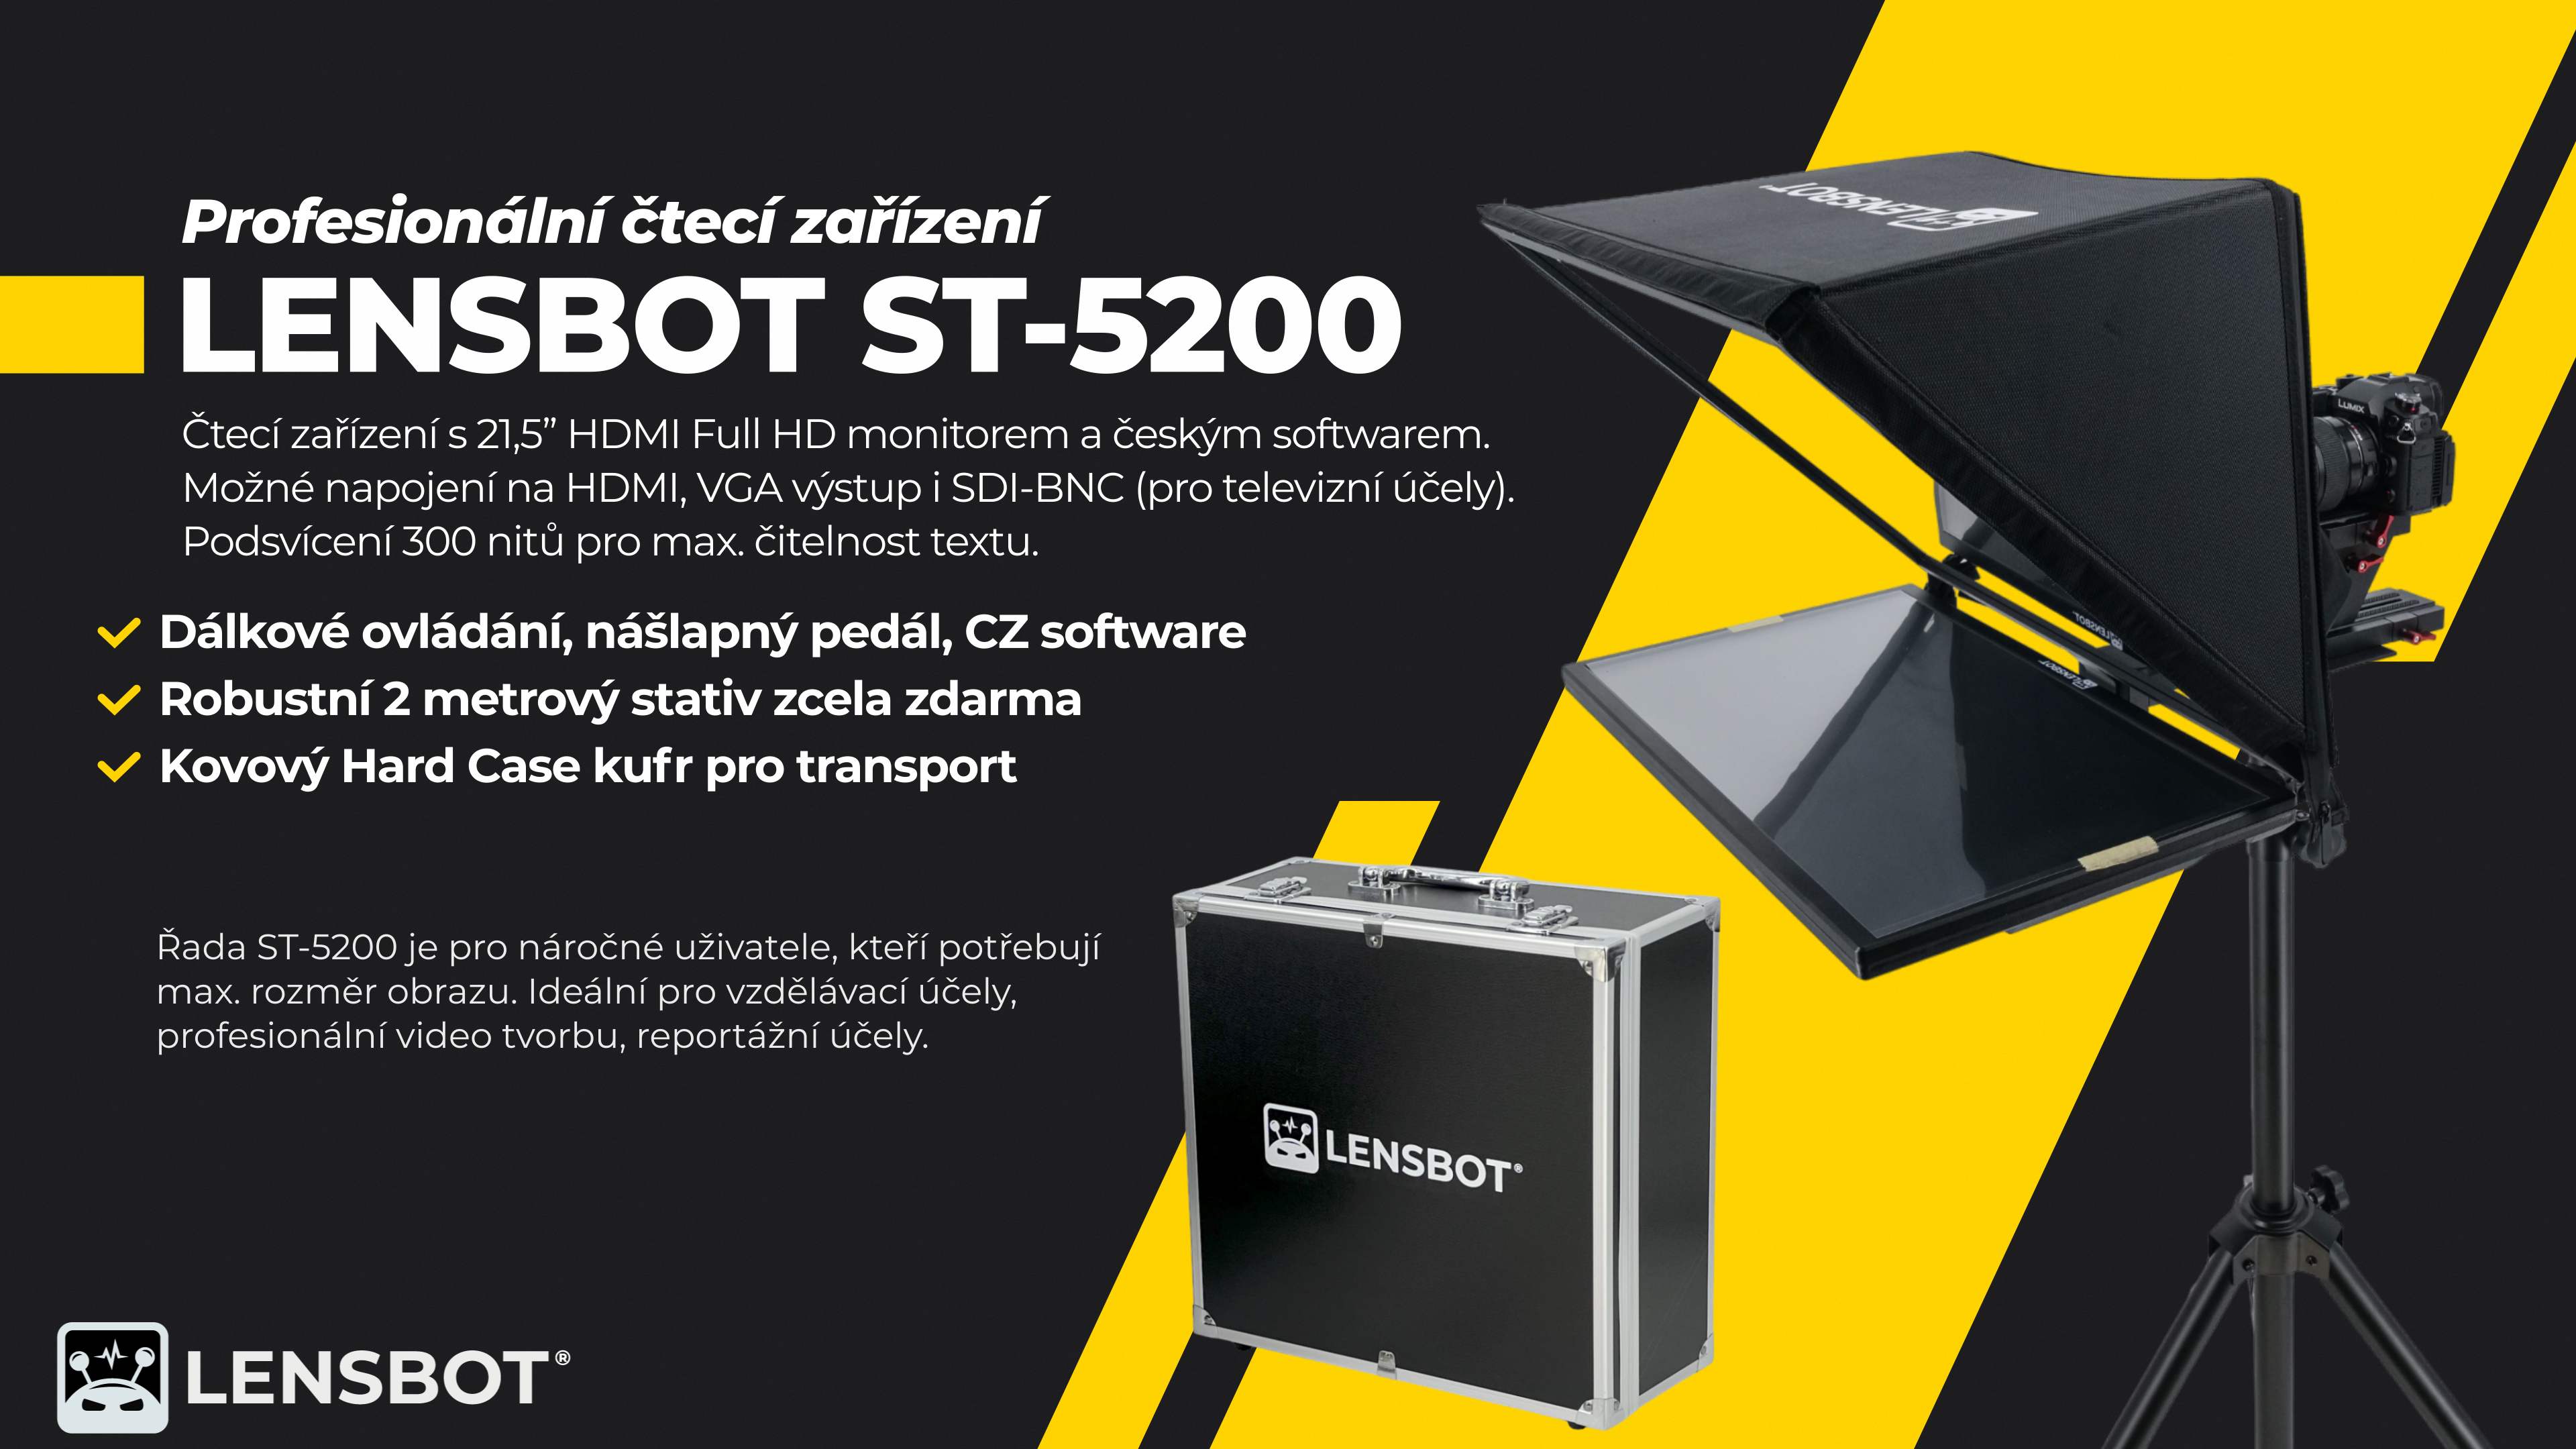 lensbot-st-5200-profesionalni-cteci-zarizeni-LQ